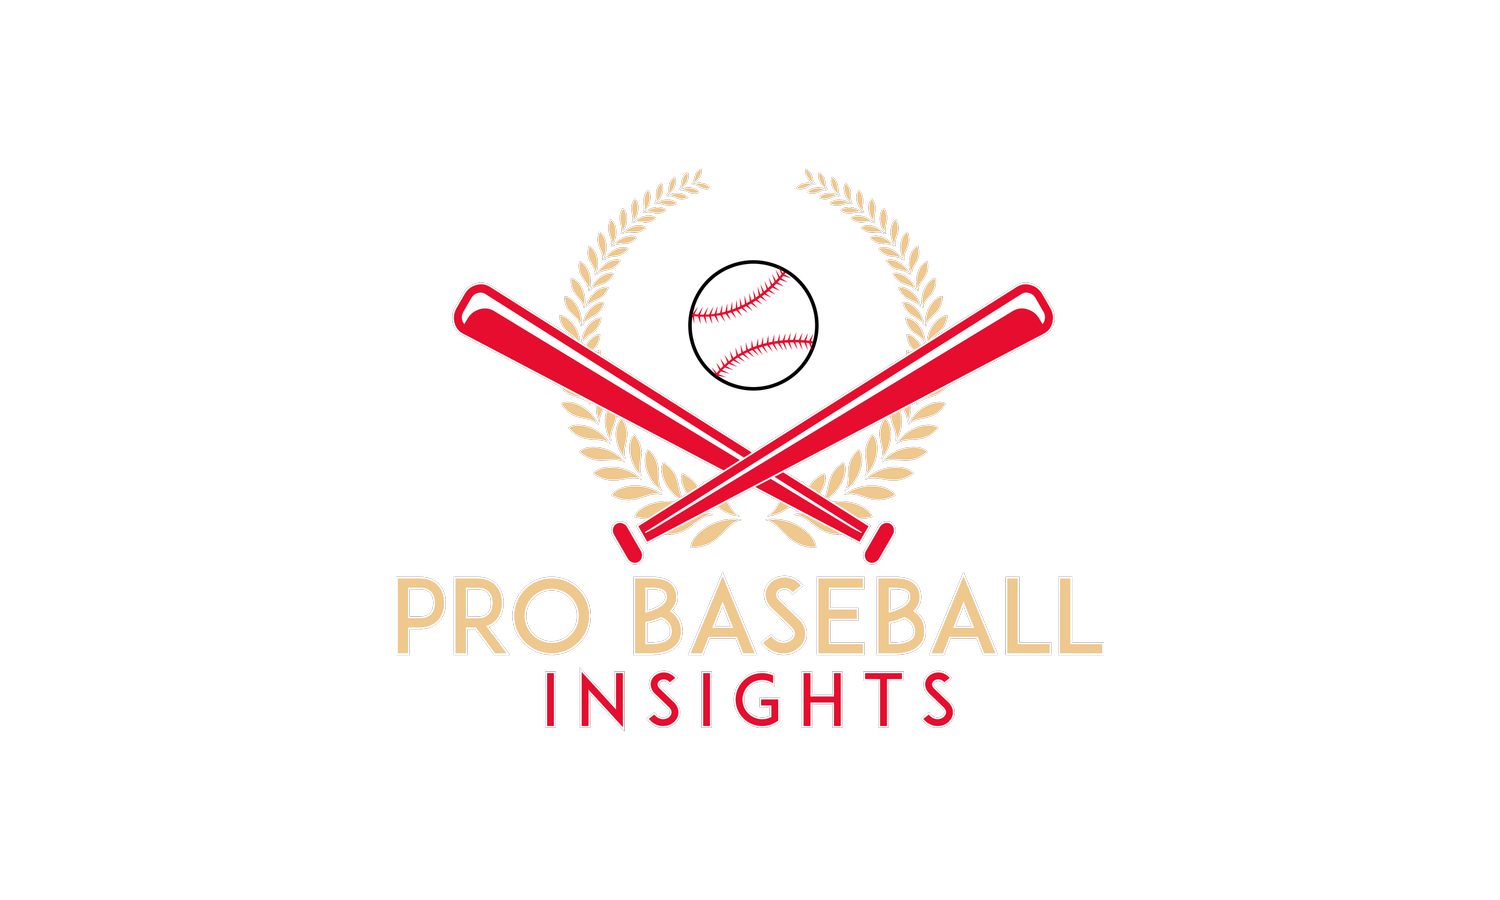 Pro Baseball Insights